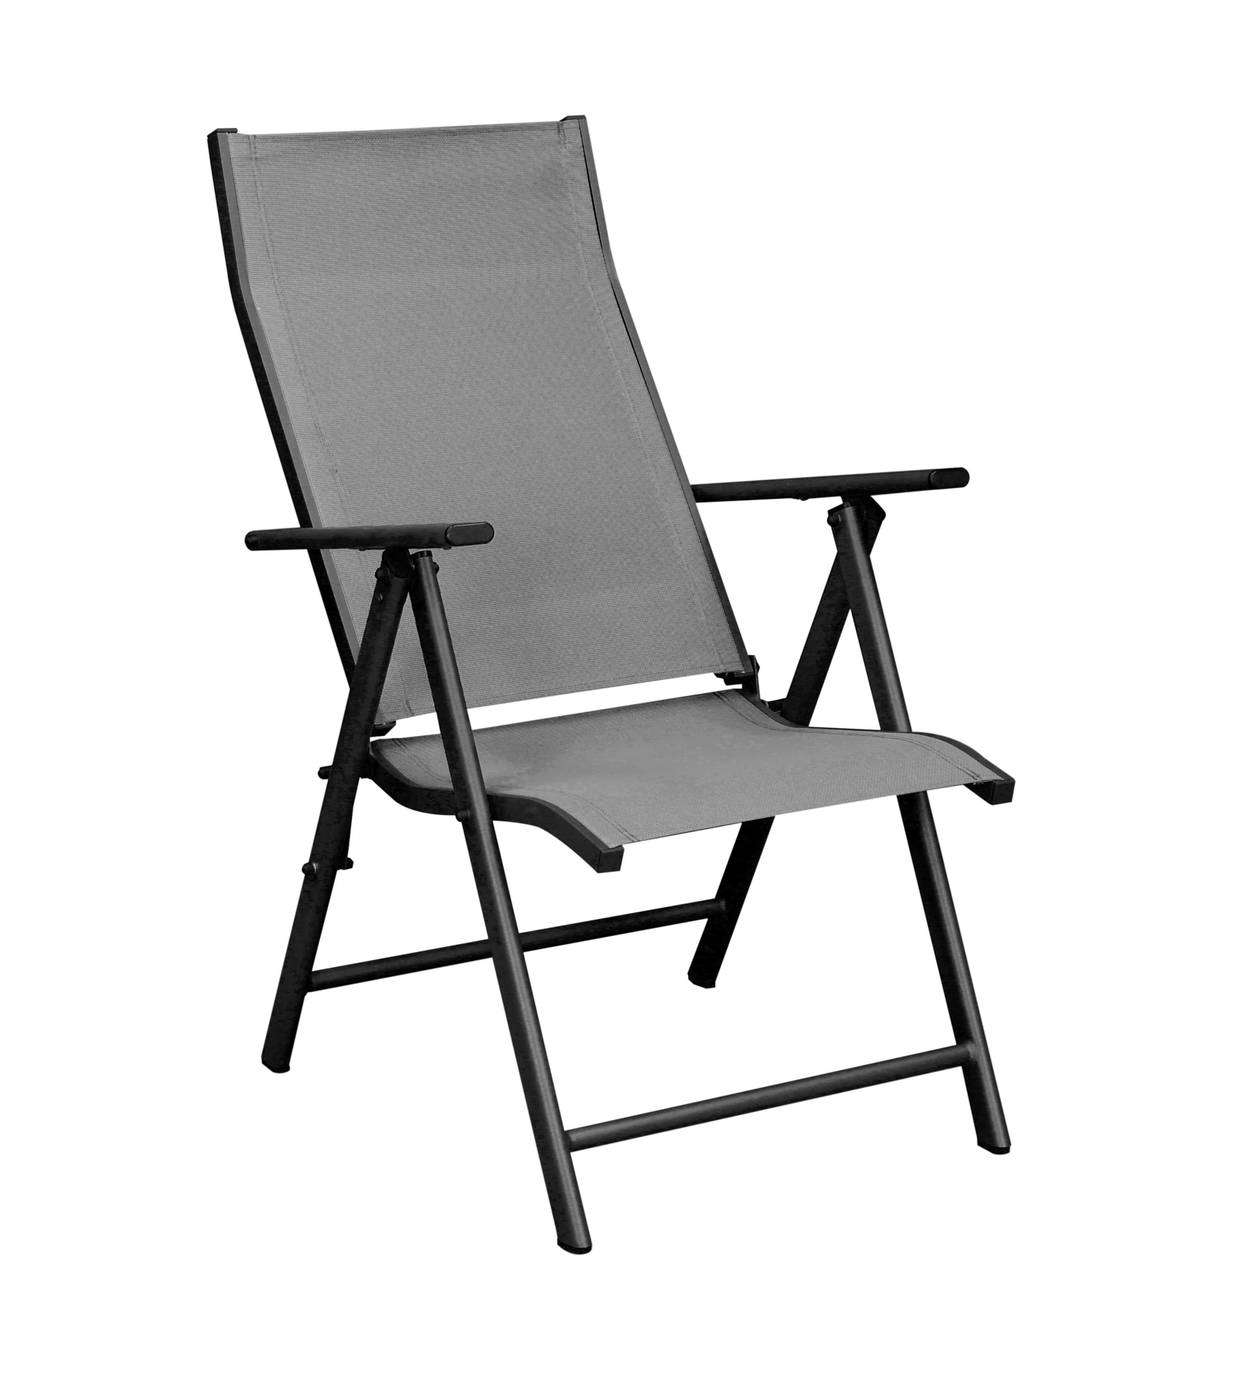 Set Córcega-160-4 Saporo - Conjunto de aluminio para jardín: Mesa rectangular con tablero HPL de 160 cm + 4 tumbonas con asiento y respaldo textilen. Colores: blanco y antracita.